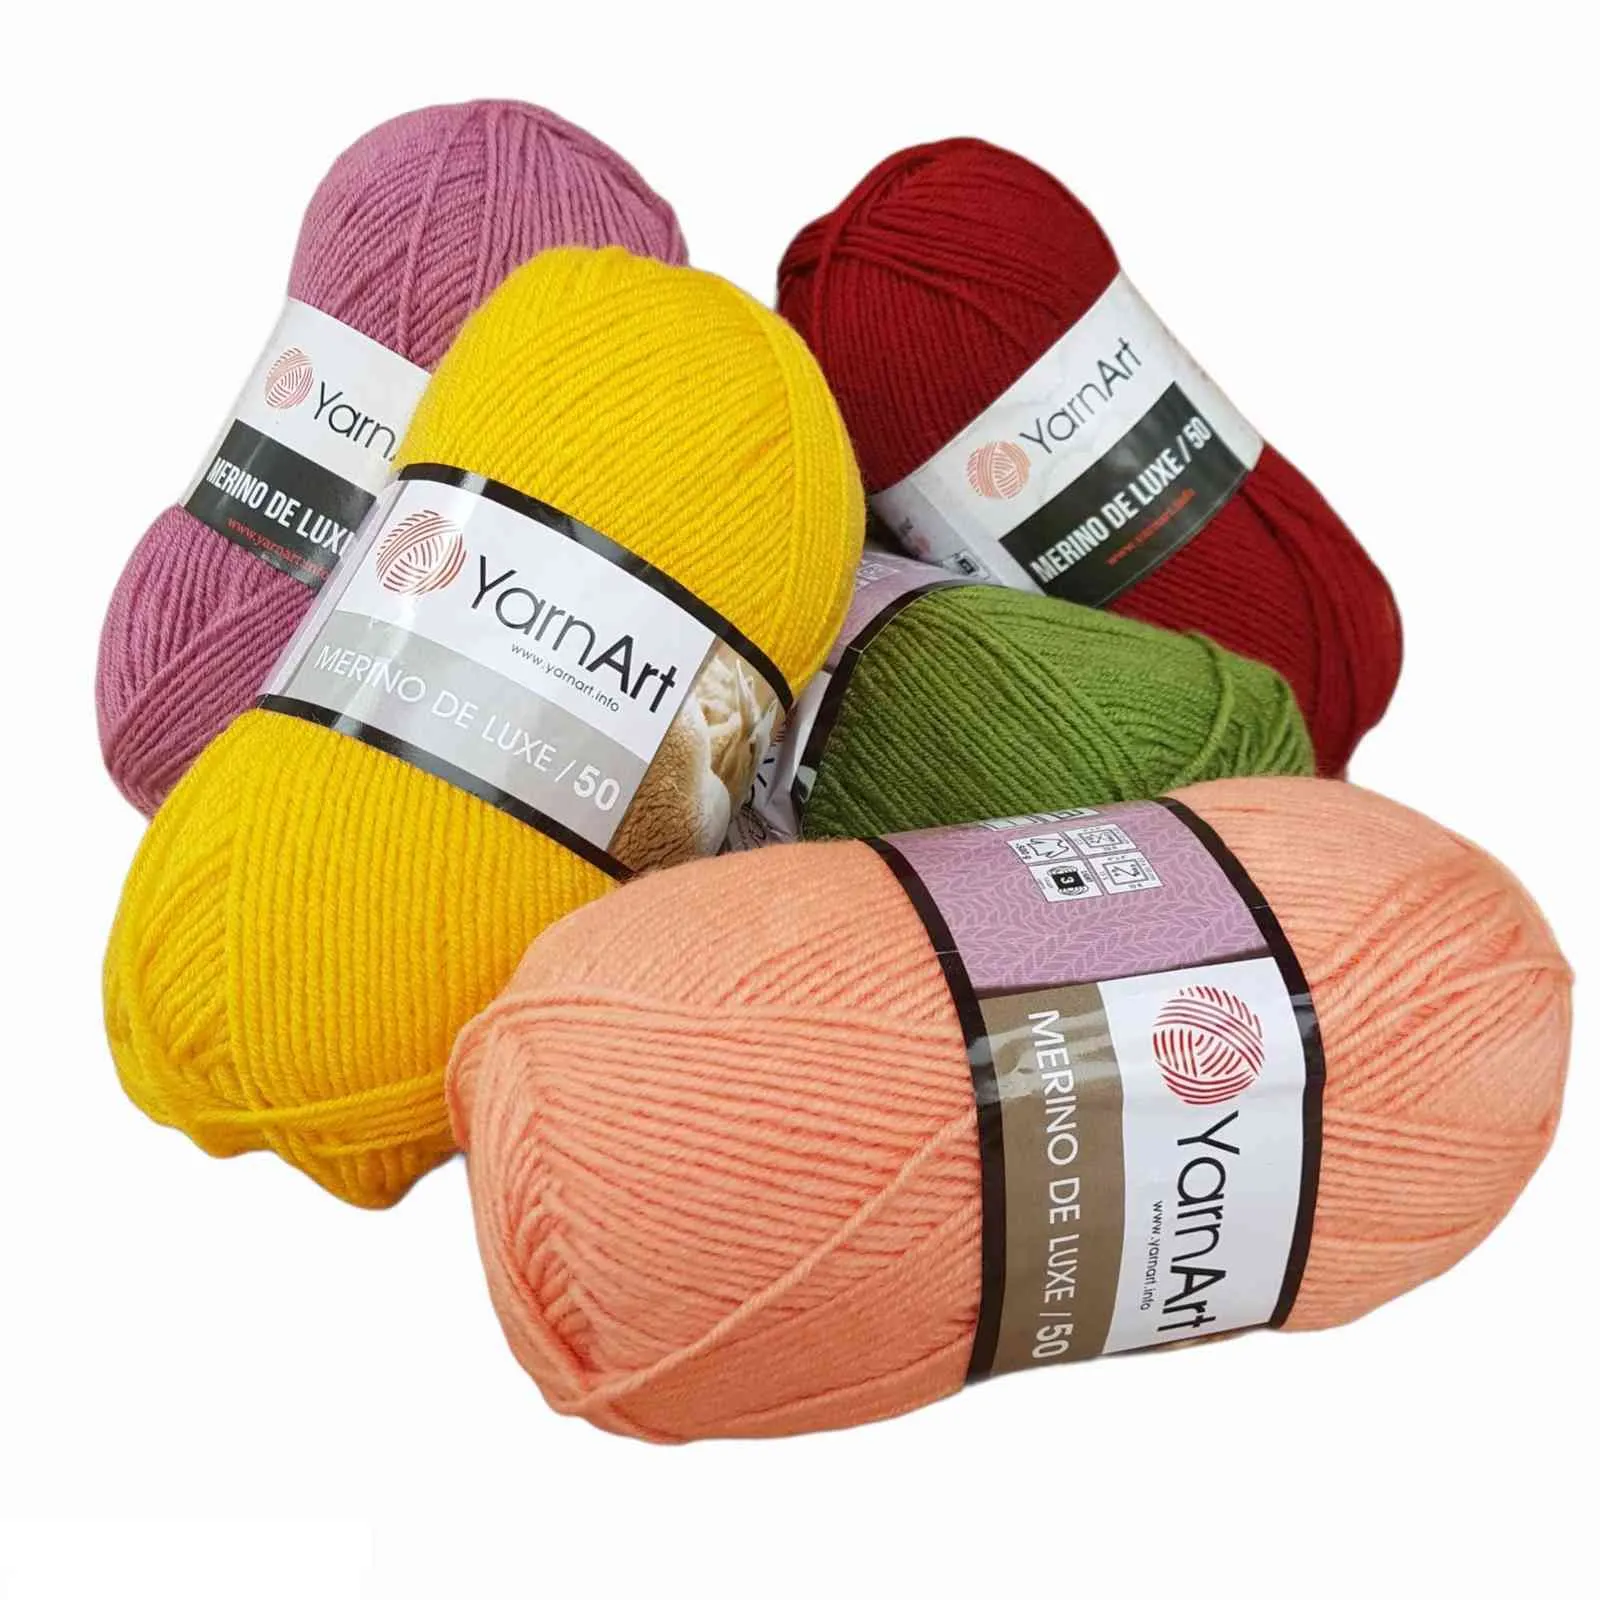 1PC Yarnart Merino Deluxe50 Yarn 100gr-280mt P Wool DIY Knitting Crochet Wrap Beanie Sweater Kids Adults Knitwears Autumn Winter Y211129